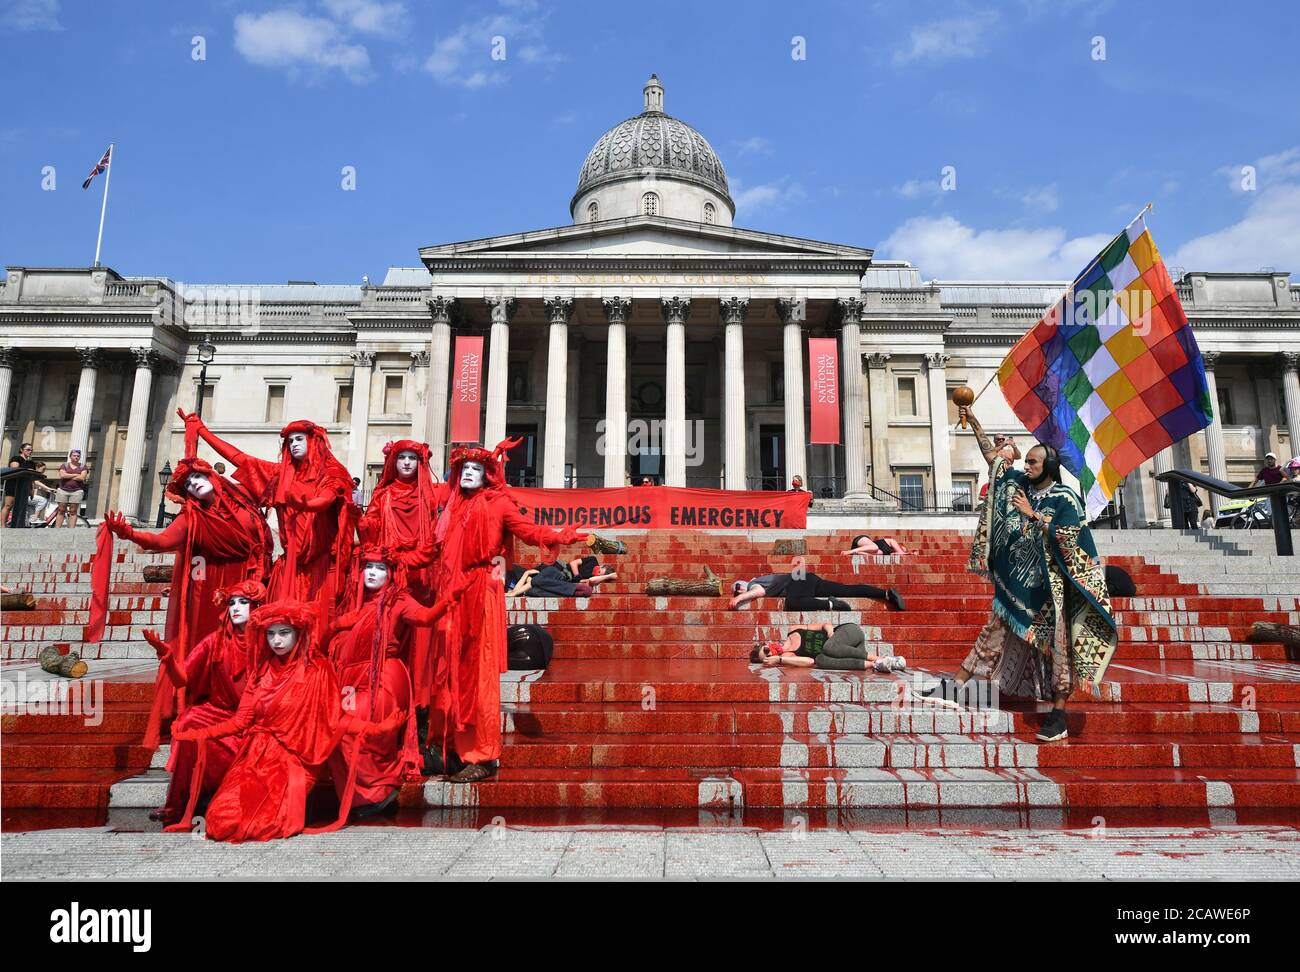 Extinction les manifestants de la rébellion versent de la teinture rouge sur les marches à l'extérieur de la National Gallery à Trafalgar Square, Londres, dans une action de solidarité pour les communautés autochtones du Brésil qui meurent de Covid-19. Banque D'Images